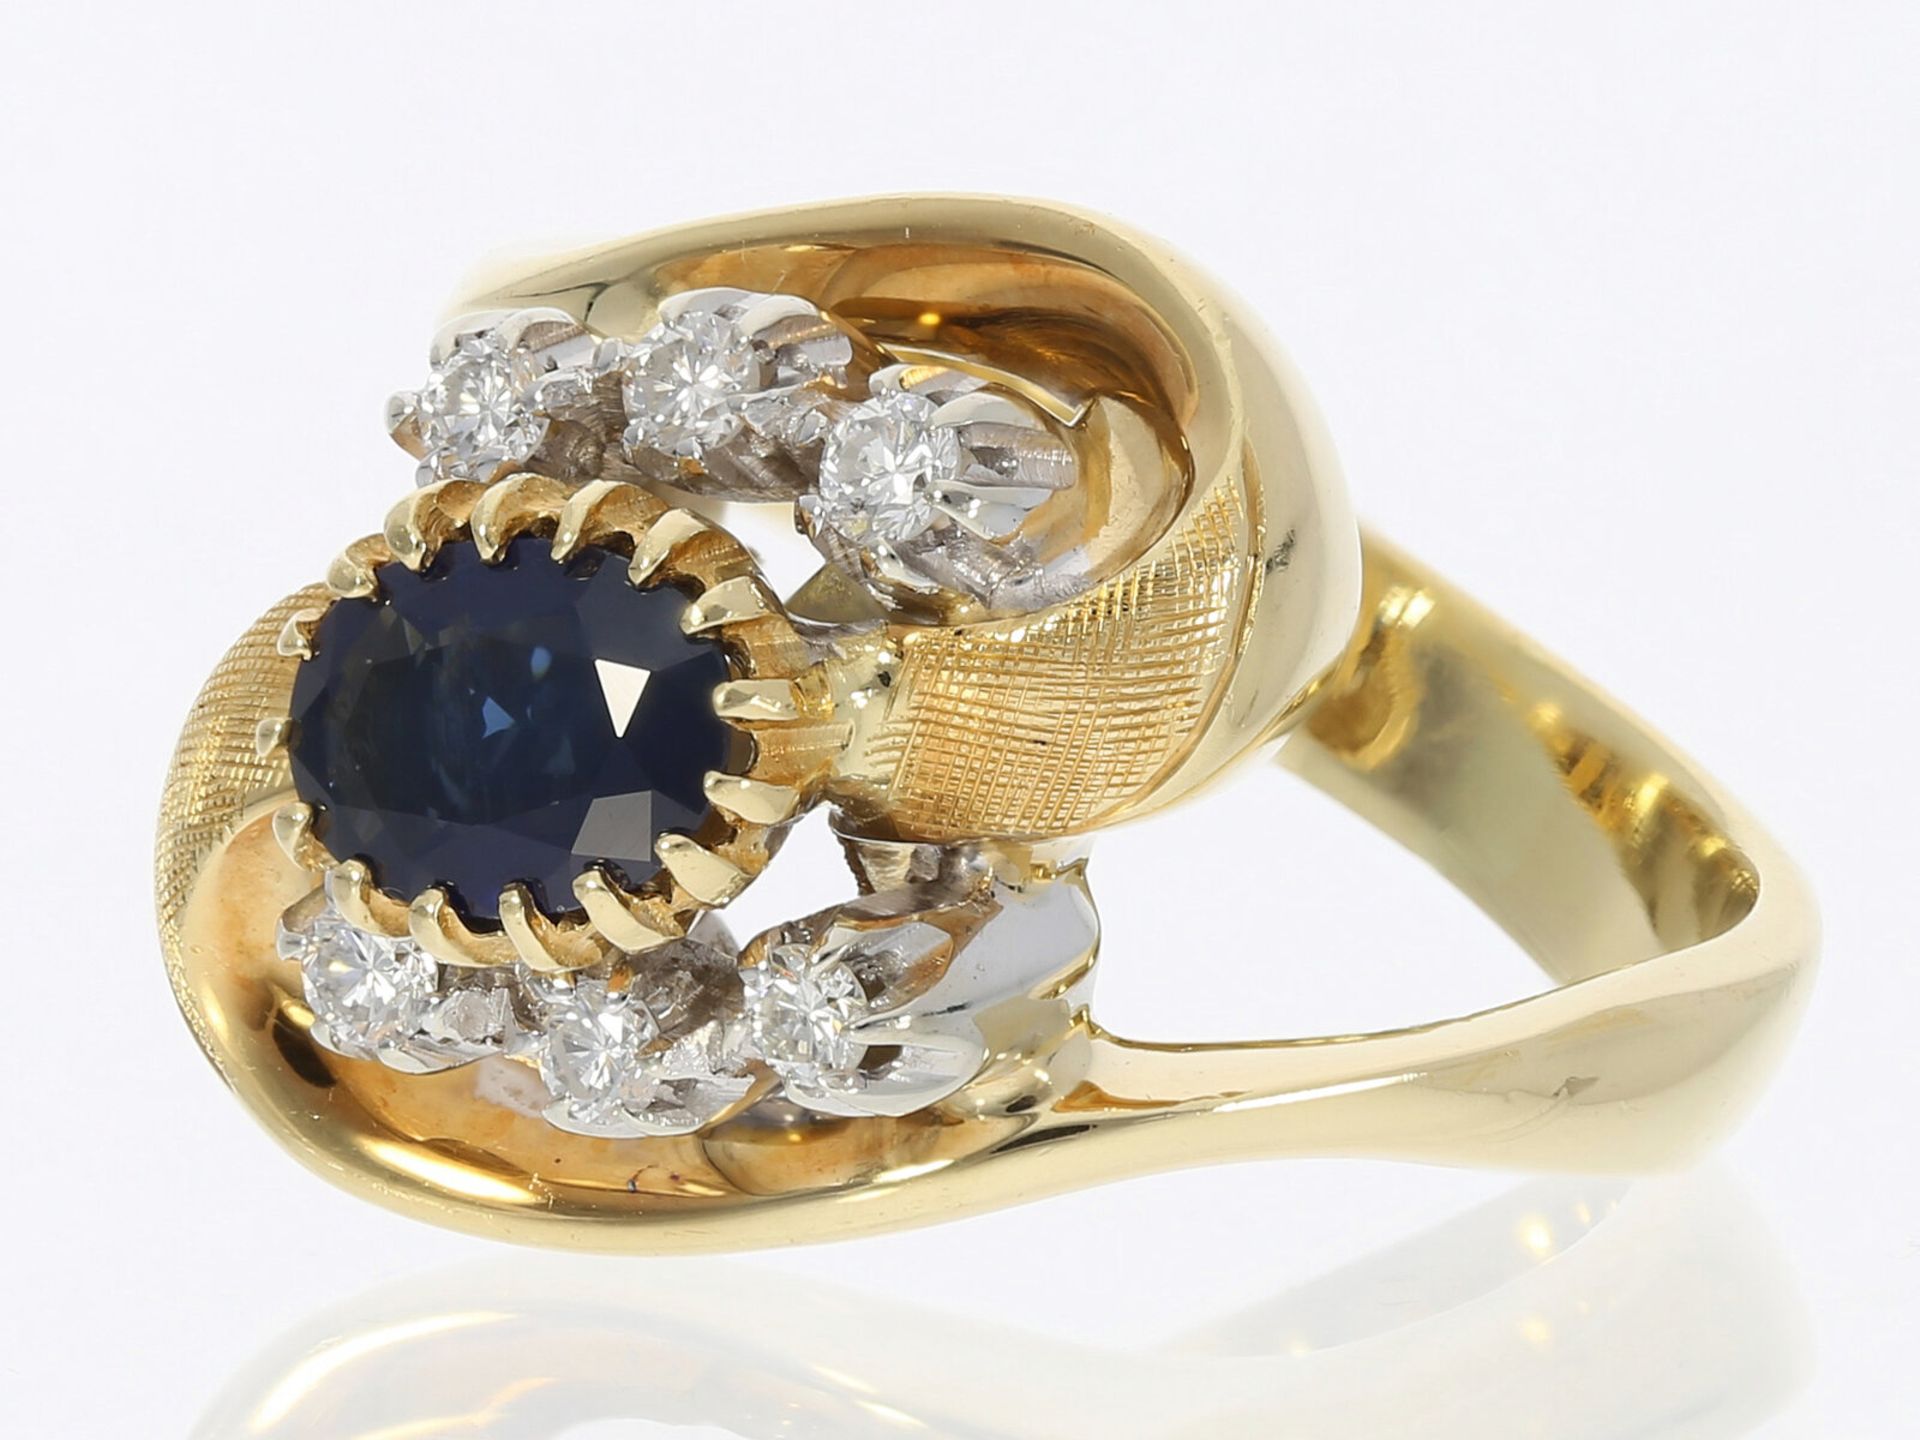 Ring: Italienische Designer Goldschmiedearbeit von Fabio Giorgio mit Saphir/Brillant, Handarbeit - Image 2 of 3